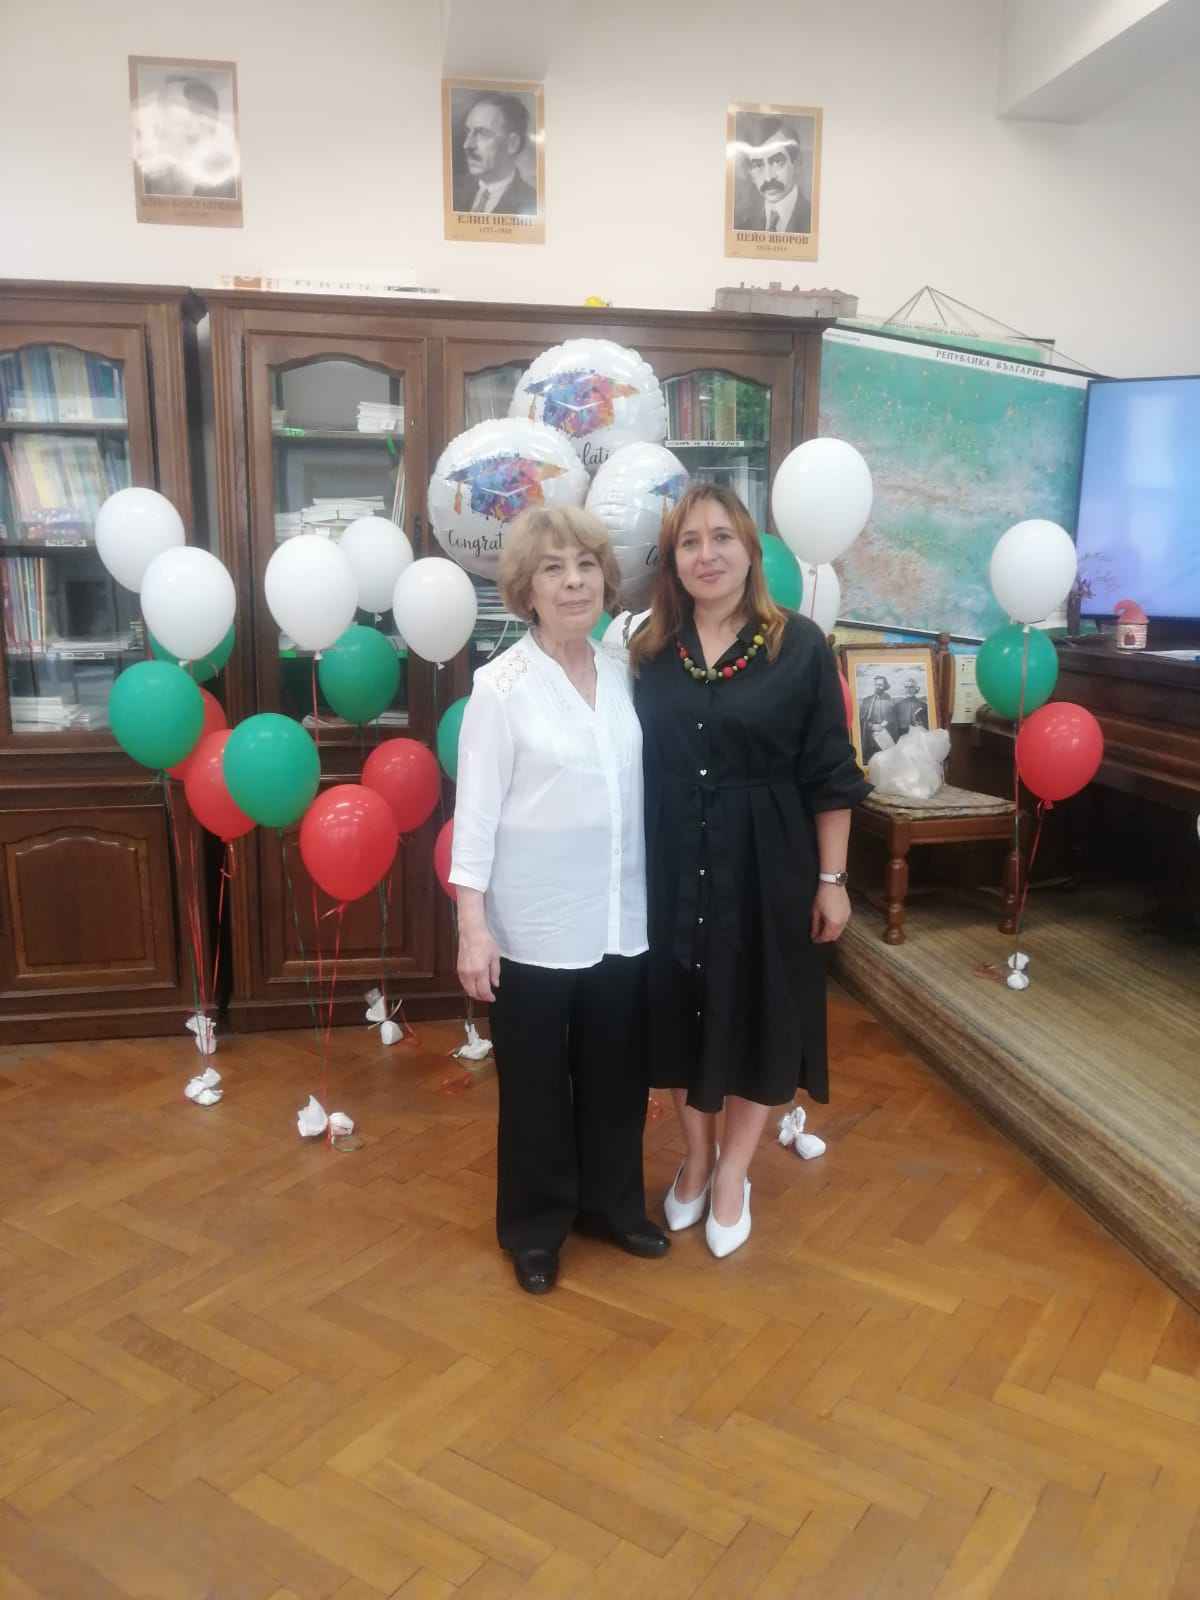 Tържество за края на учебната година се проведе в Българското неделно училище „Йордан Йовков“